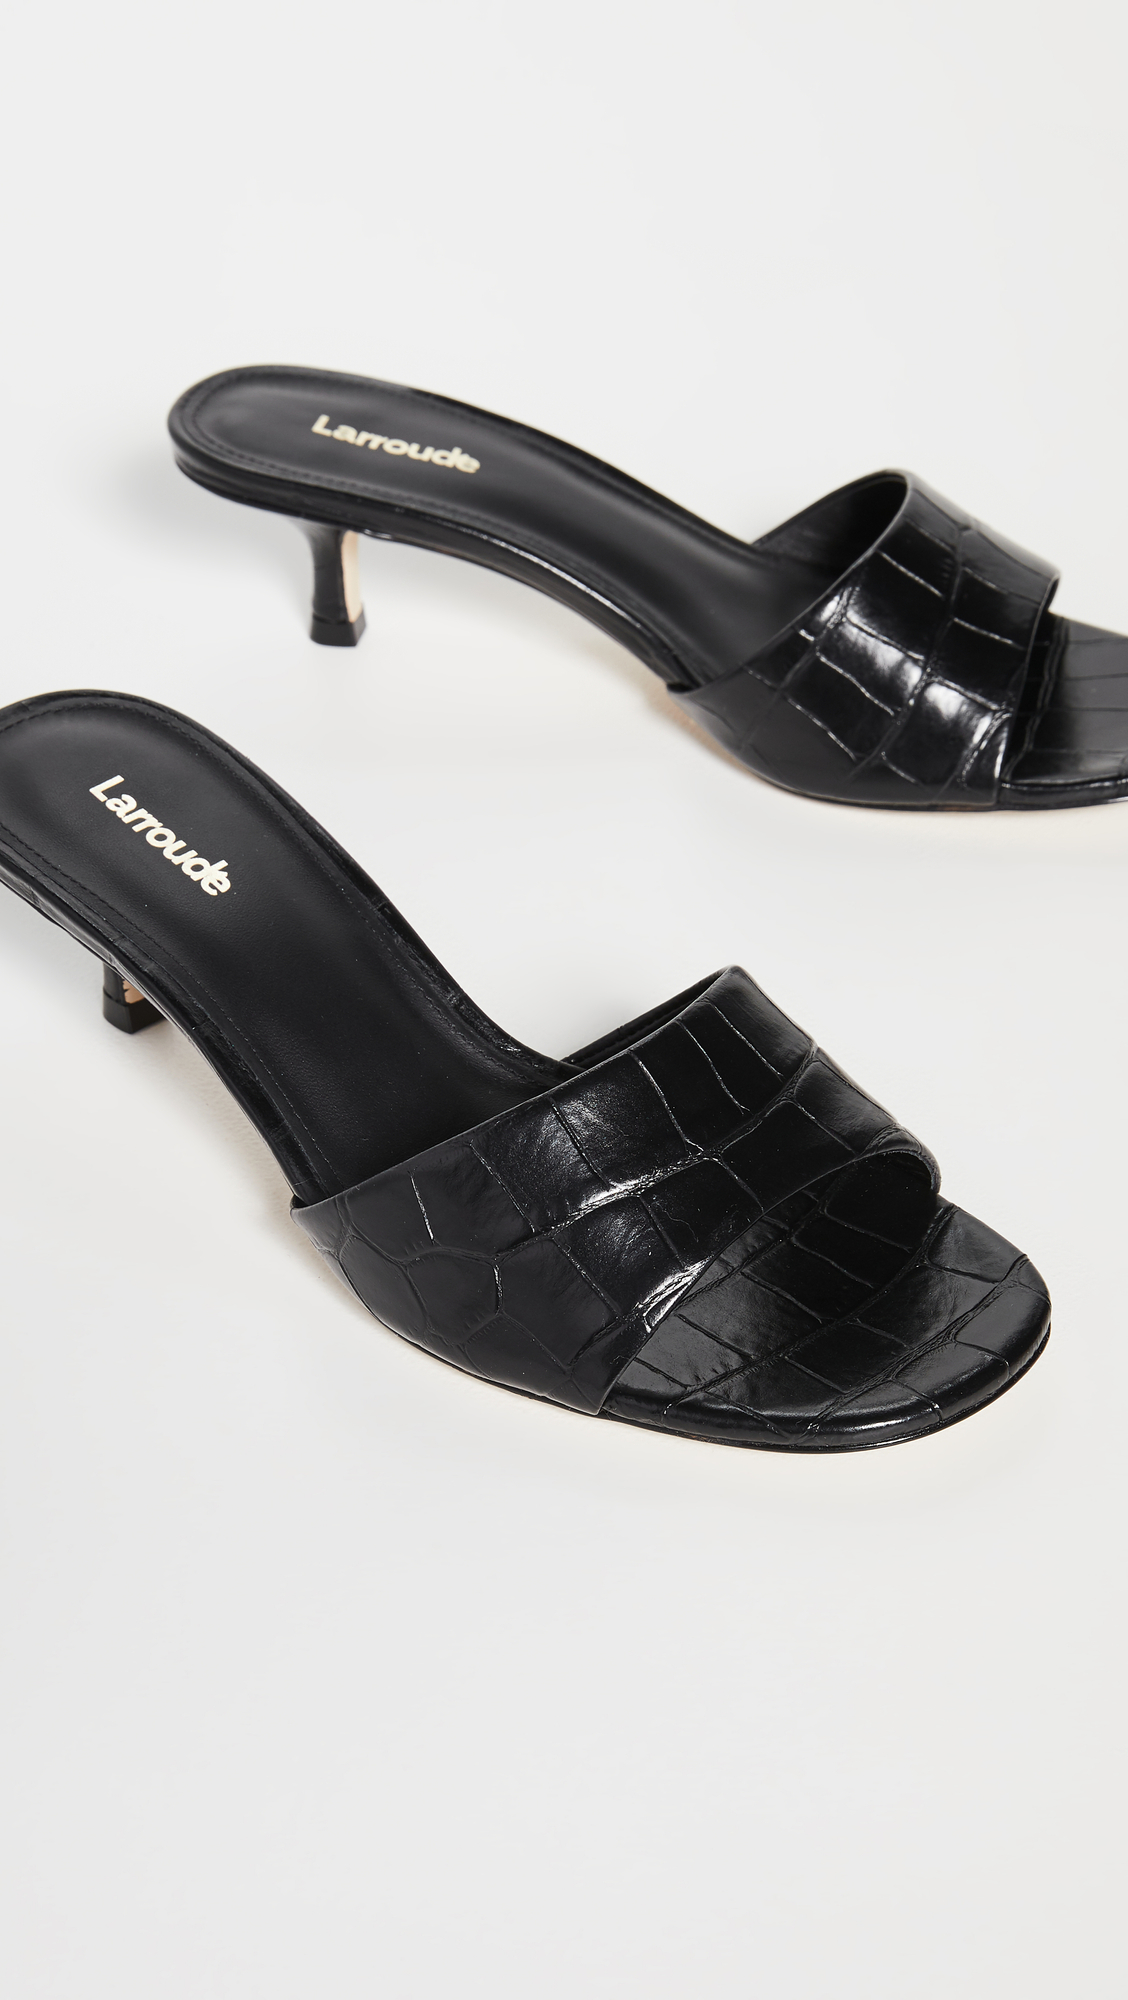 2 inch high heel | Heels, High heels, Shoes-suu.vn